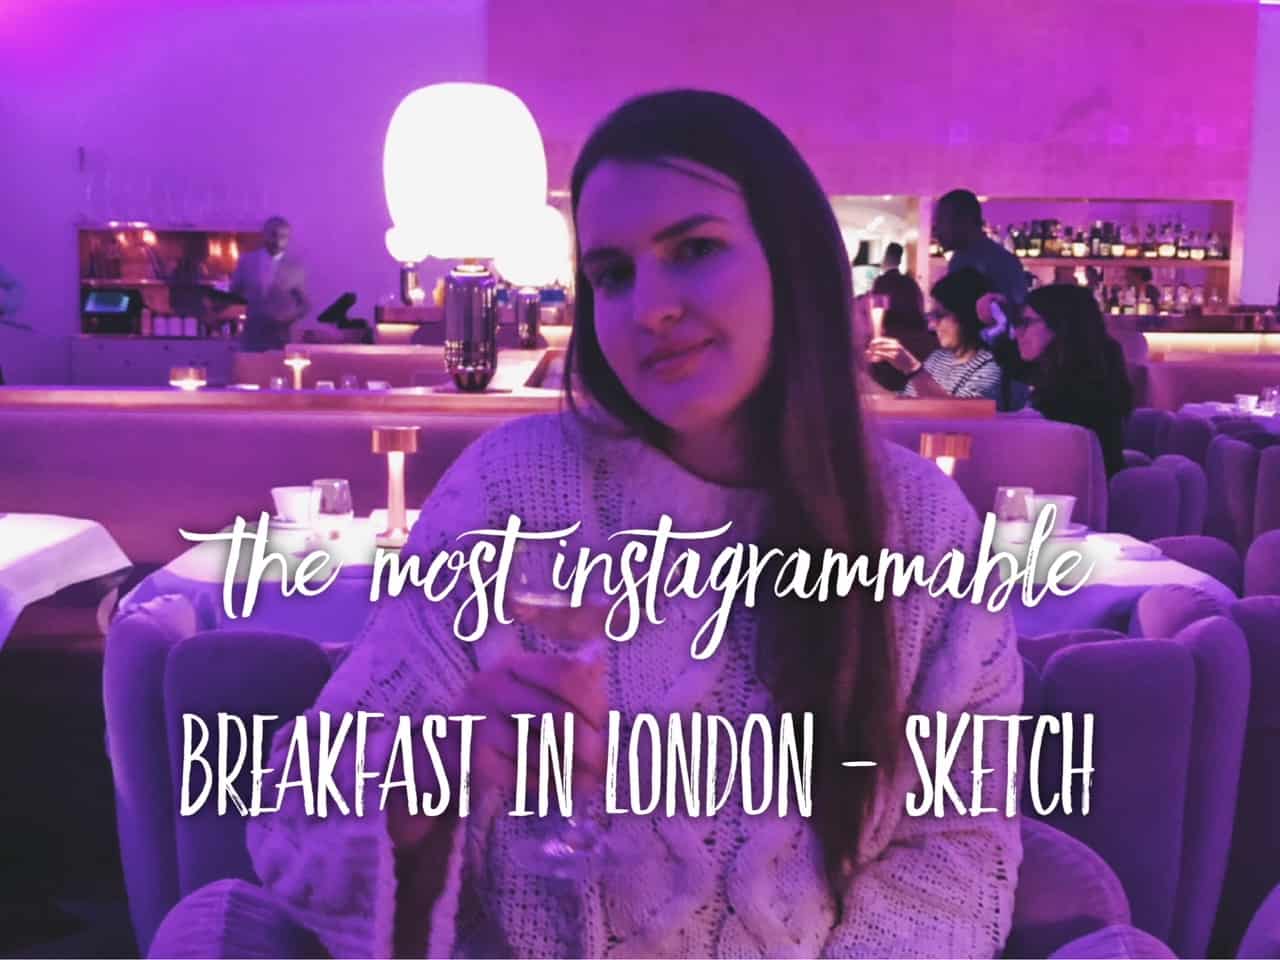 Most instagrammable breakfast in London - sketch Mayfair - best breakfast in London. Spots for breakfast in London